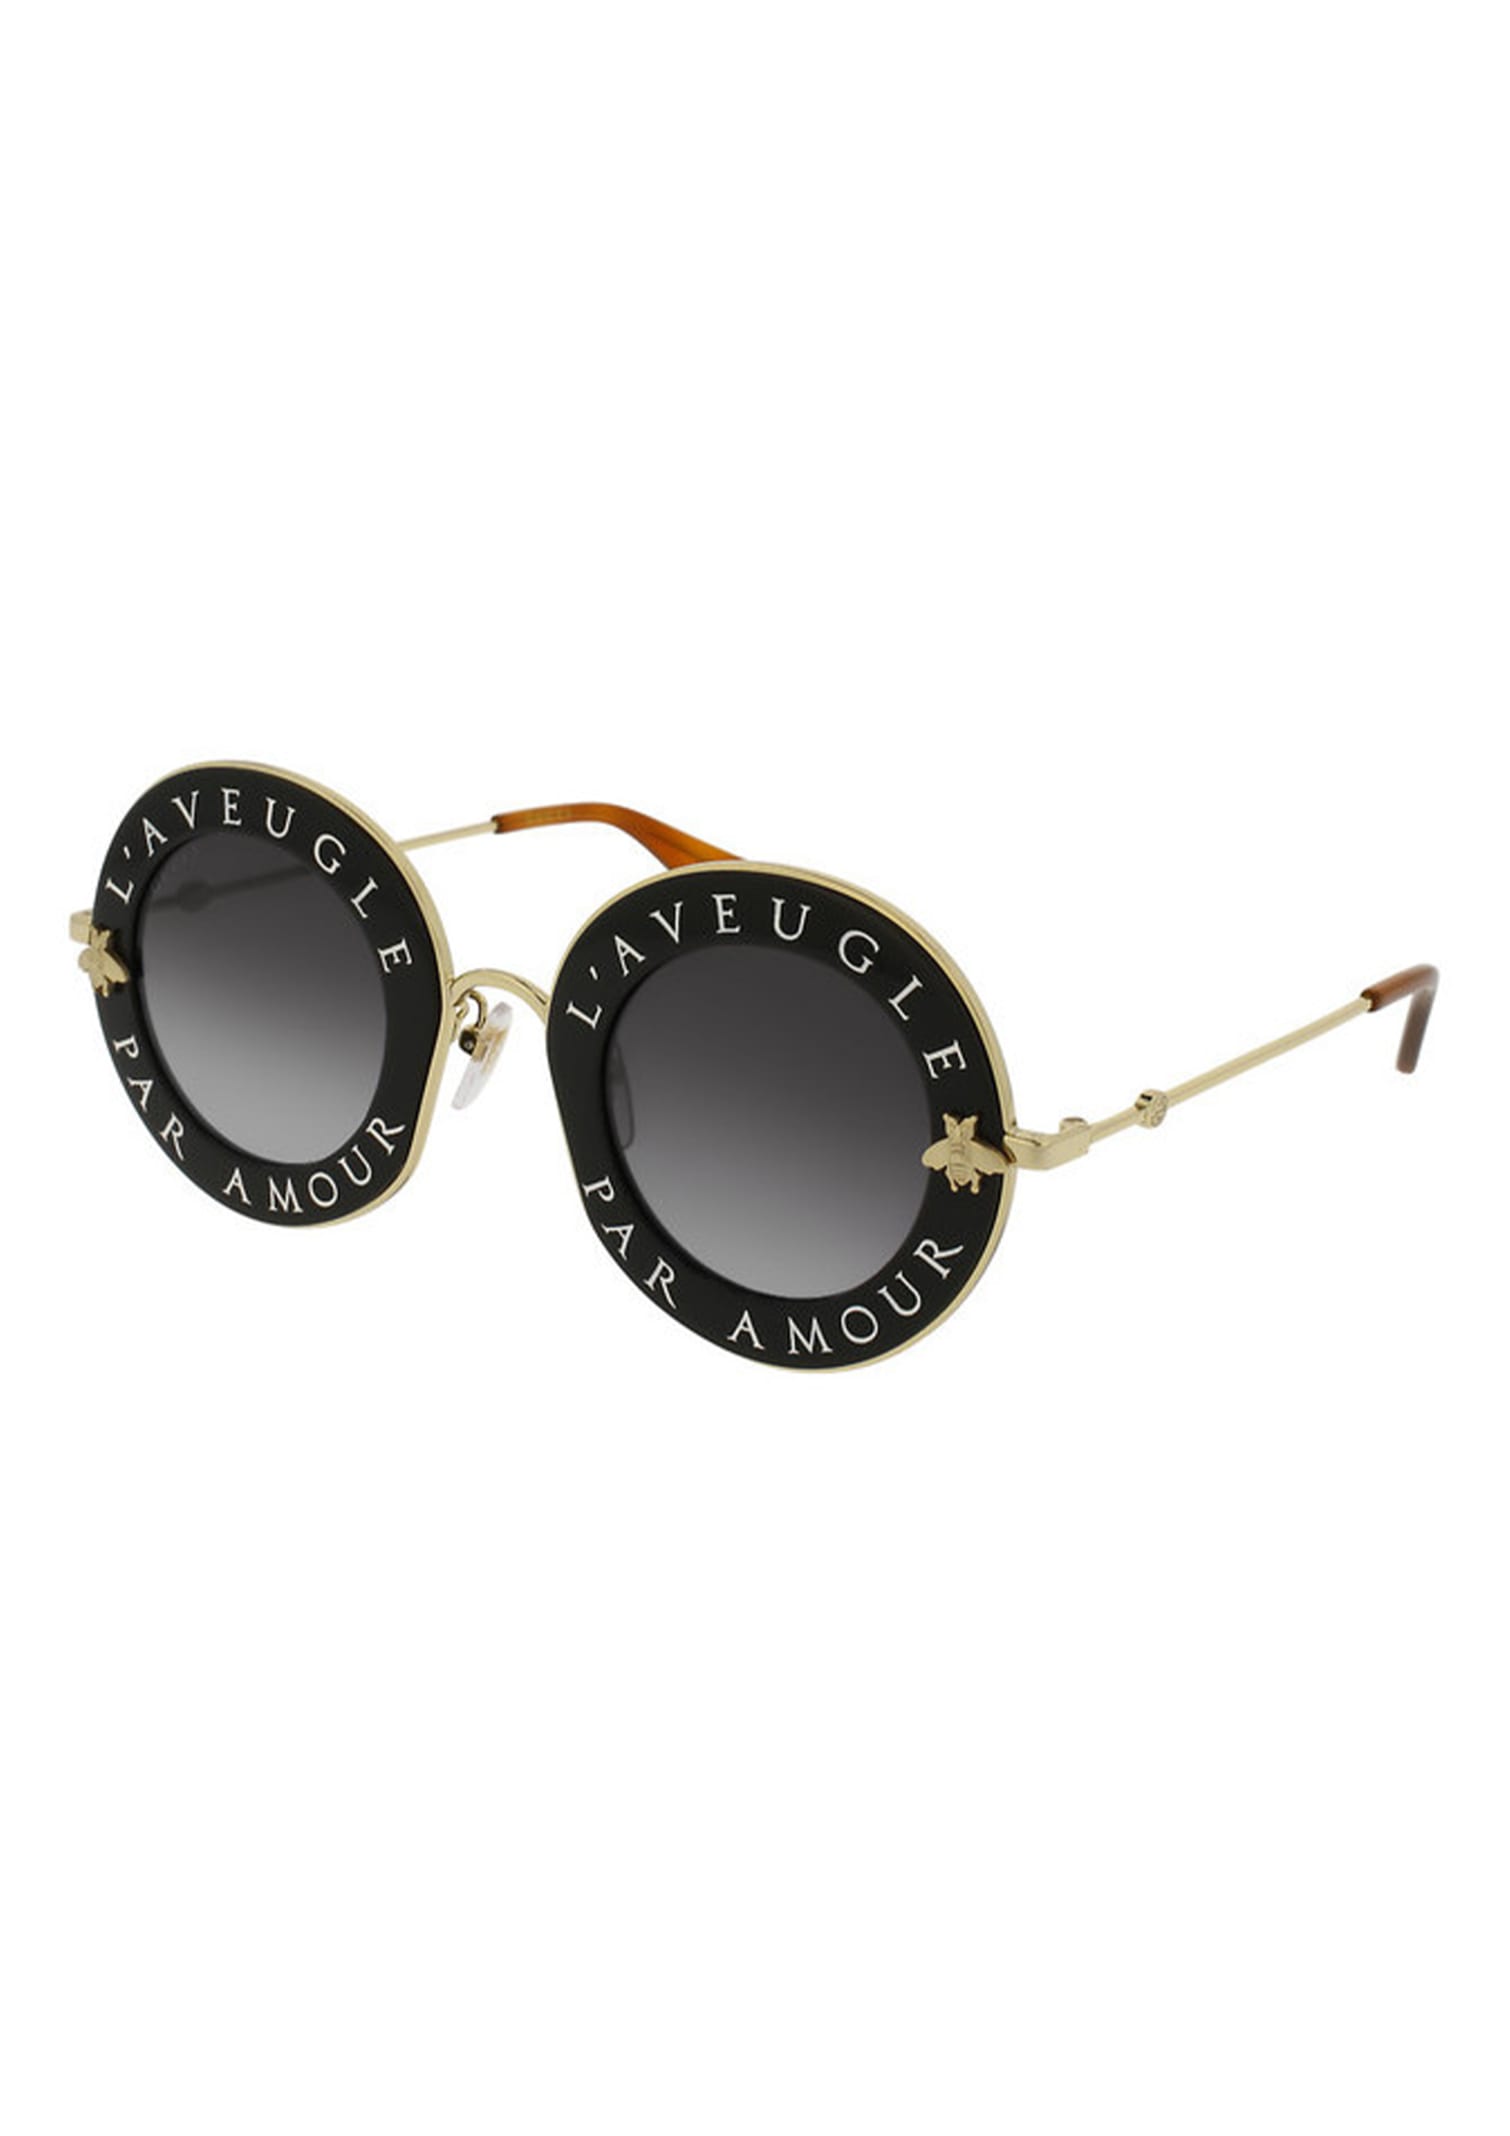 Gucci Gg0113s Sunglasses In Black Gold Grey